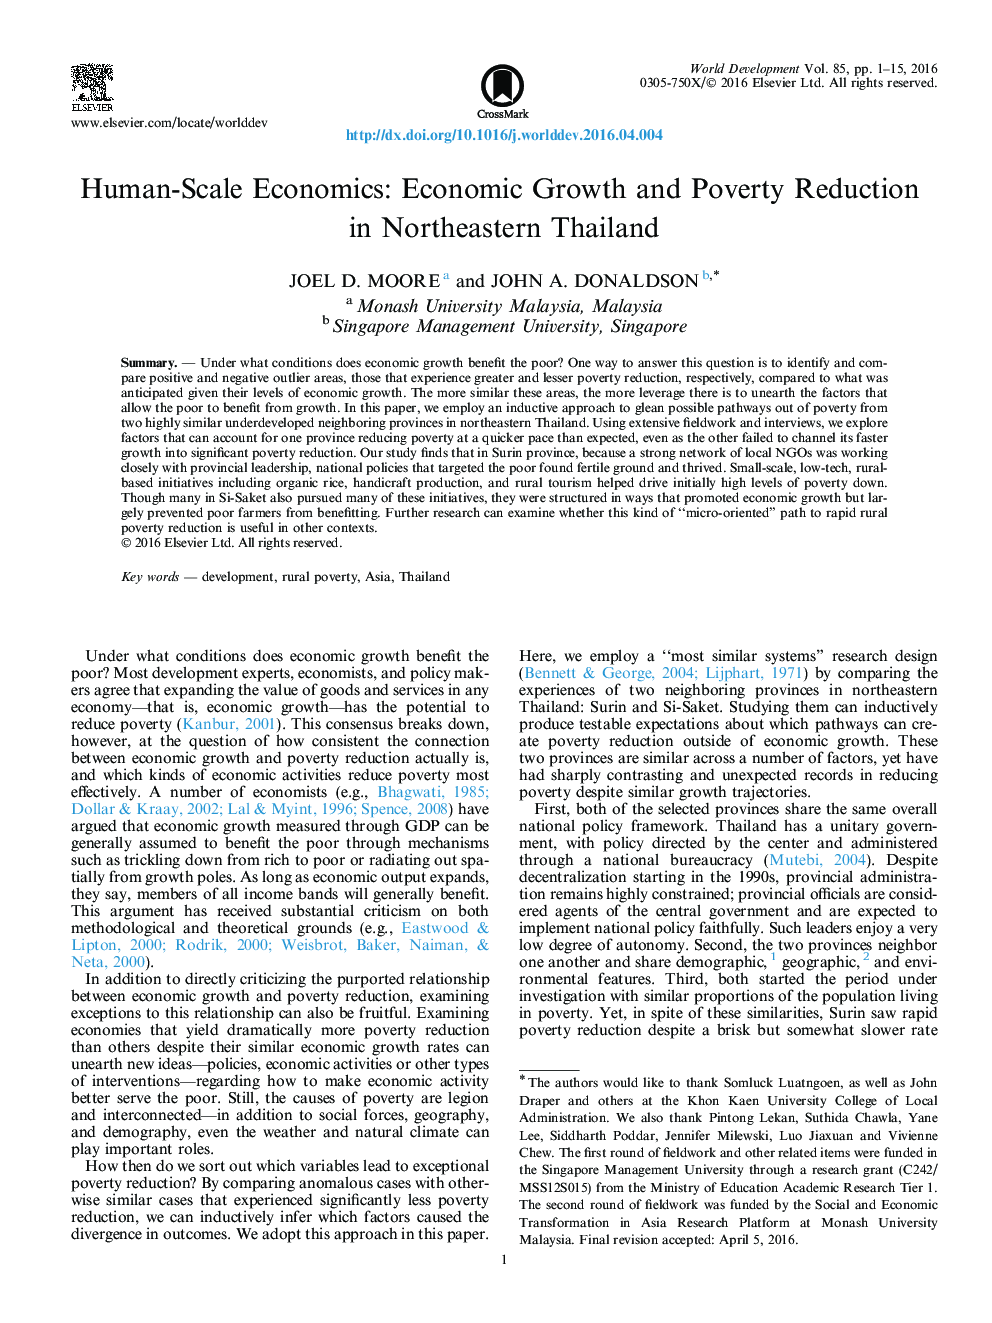 مقیاس انسانی-اقتصادی: رشد اقتصادی و کاهش فقر در شمال شرقی تایلند